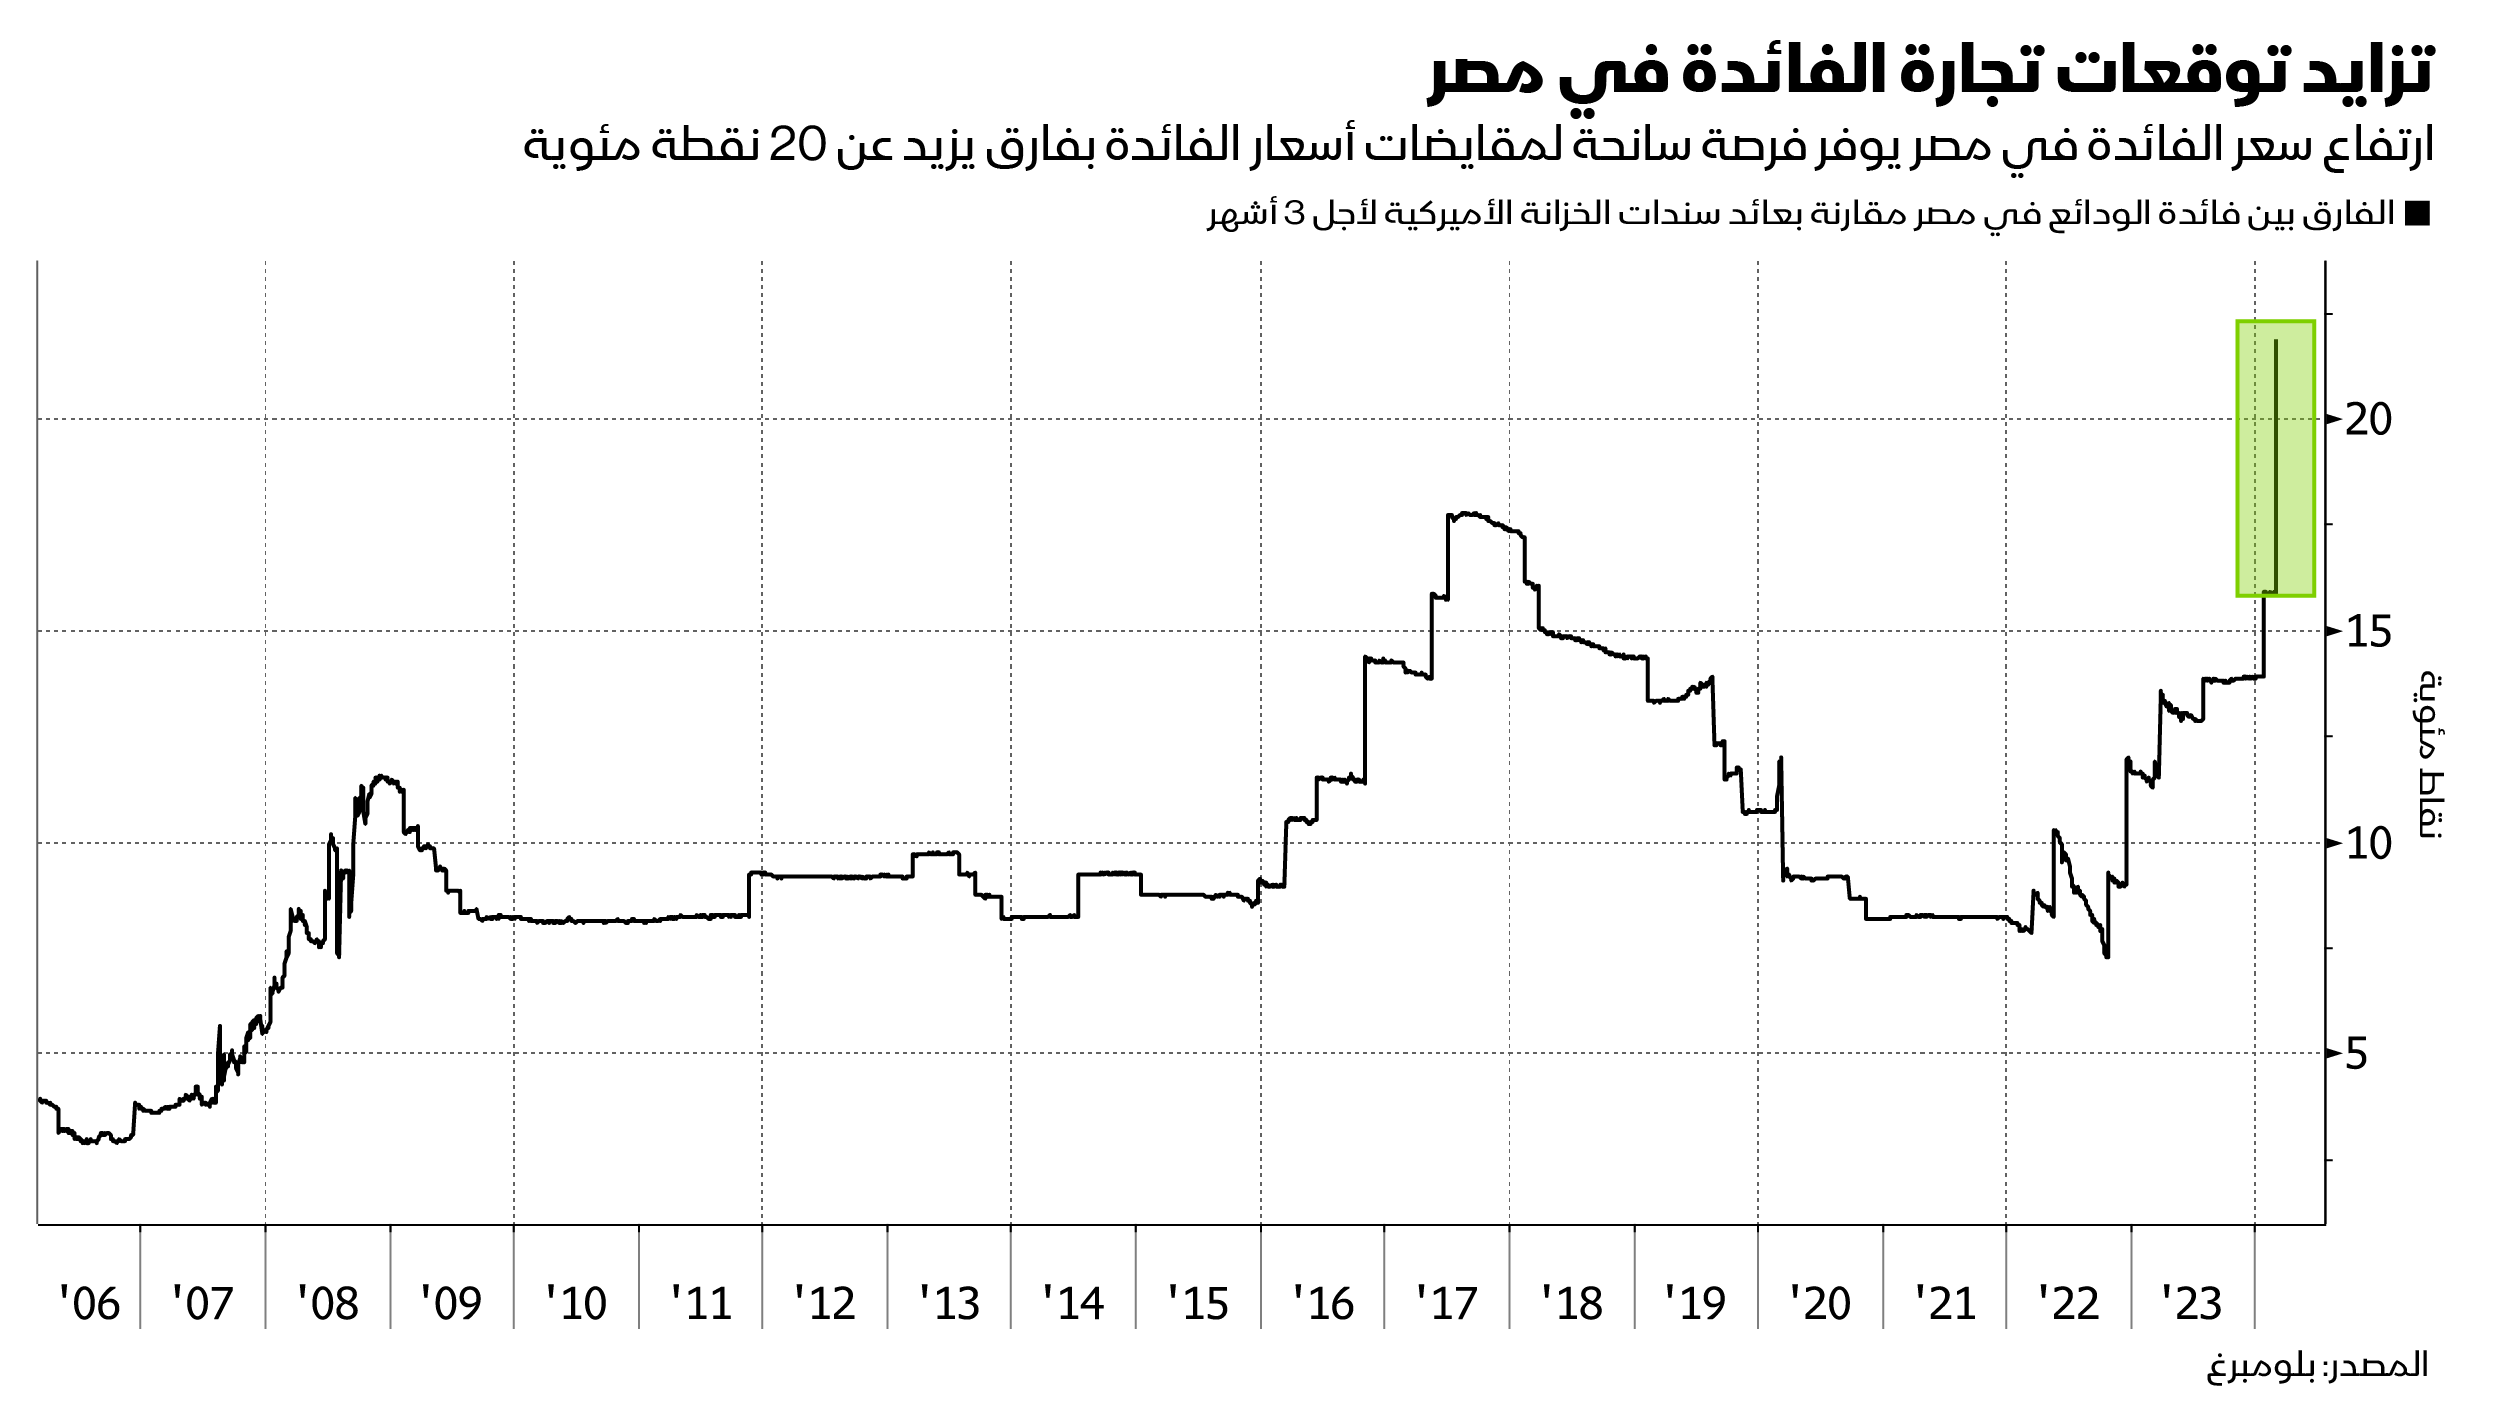 ترتفع جاذبية تجارة الفائدة في مصر بعد الخطوات الاقتصادية التي اتخذتها البلاد خلال الأسبوع الماضي